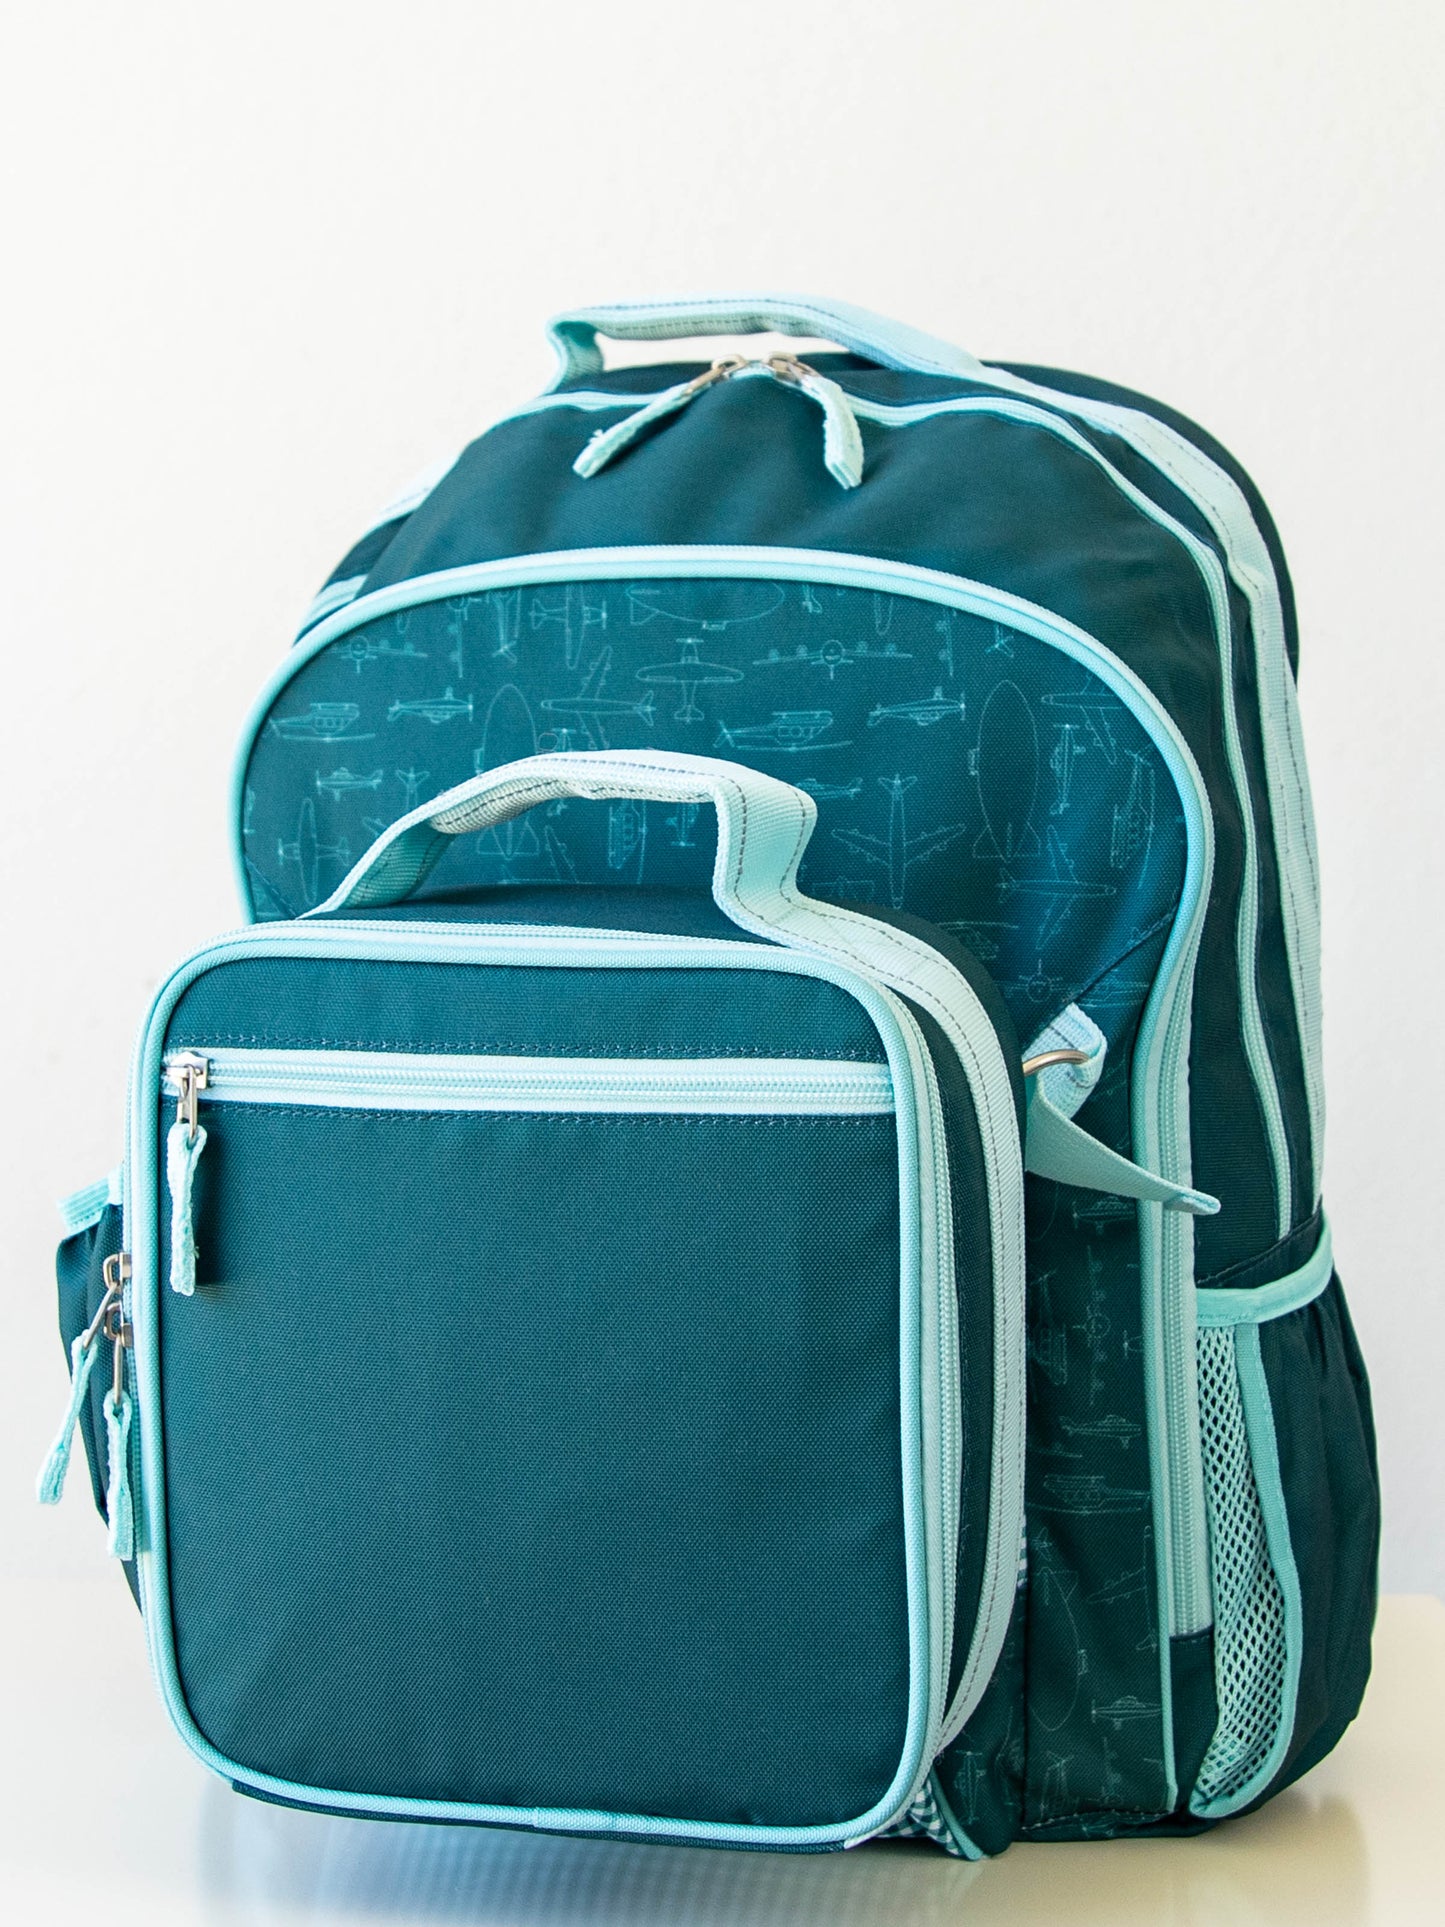 Rowen Backpack - Air Travel